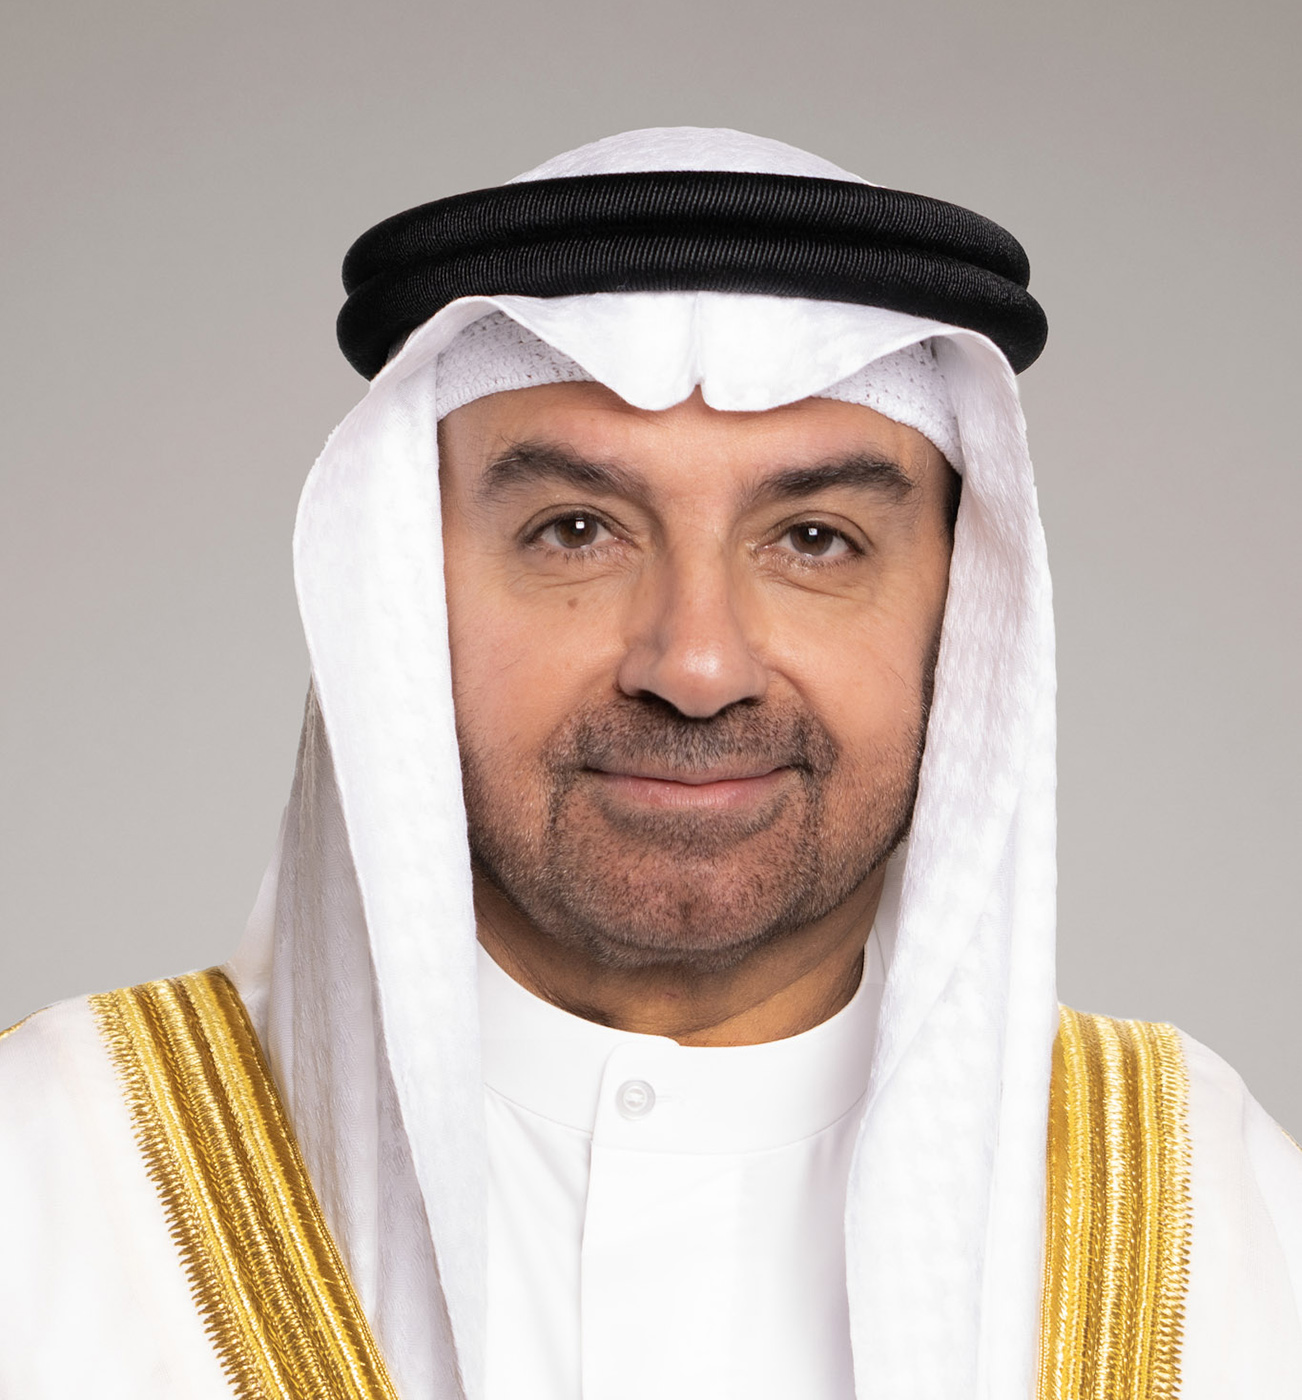 نائب رئيس مجلس الوزراء ووزير النفط ووزير الدولة للشؤون الاقتصادية والاستثمار الدكتور سعد البراك